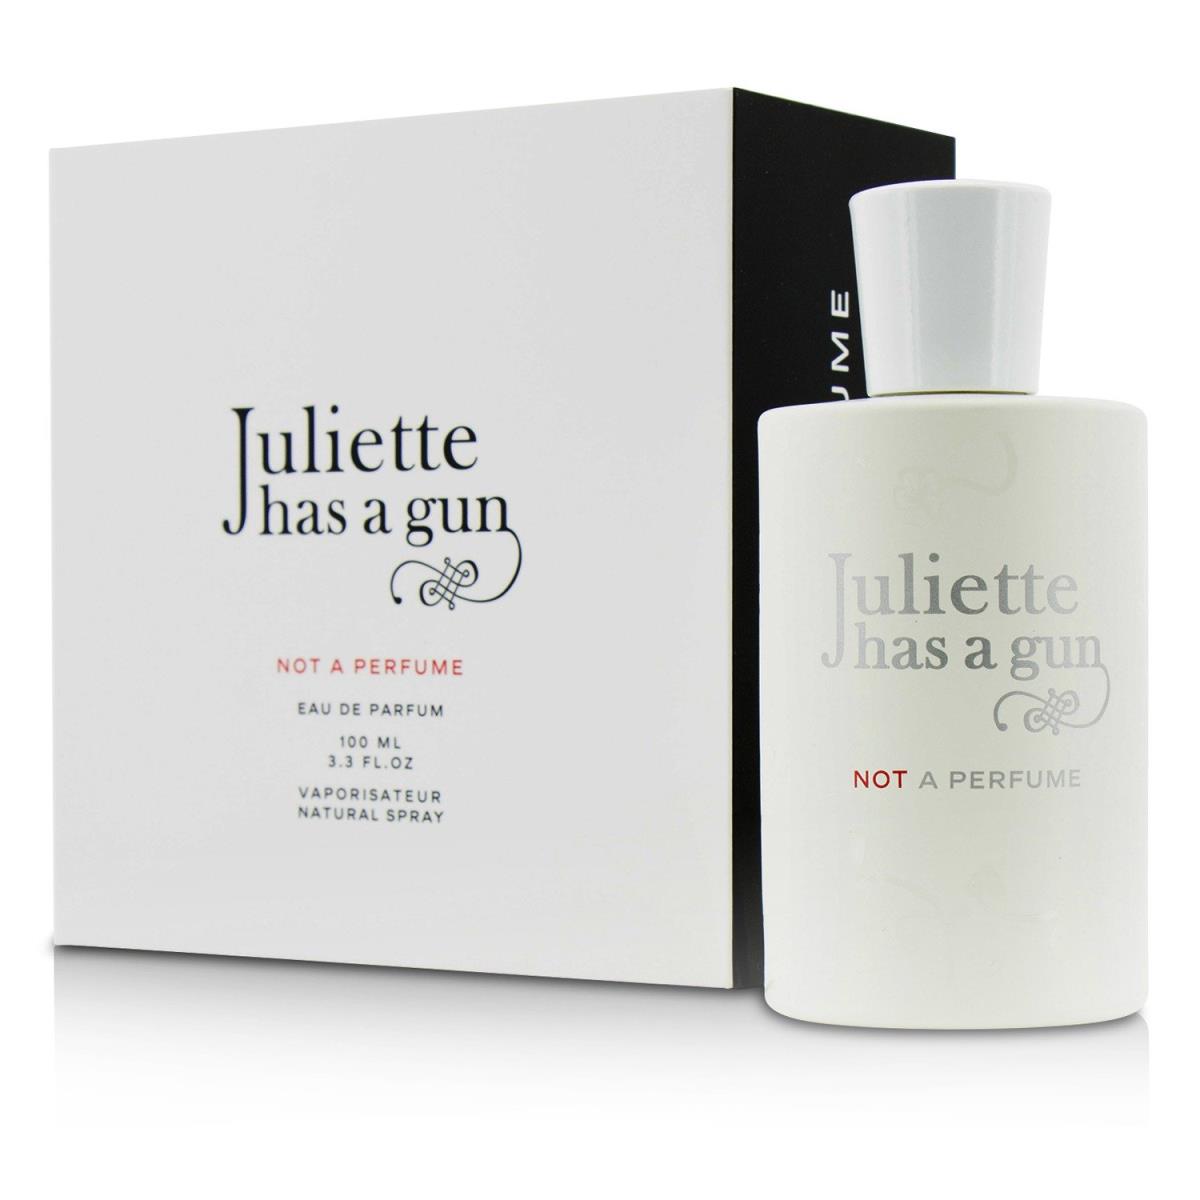 Juliette Has a Gun perfume,cologne,fragrance,parfum  2